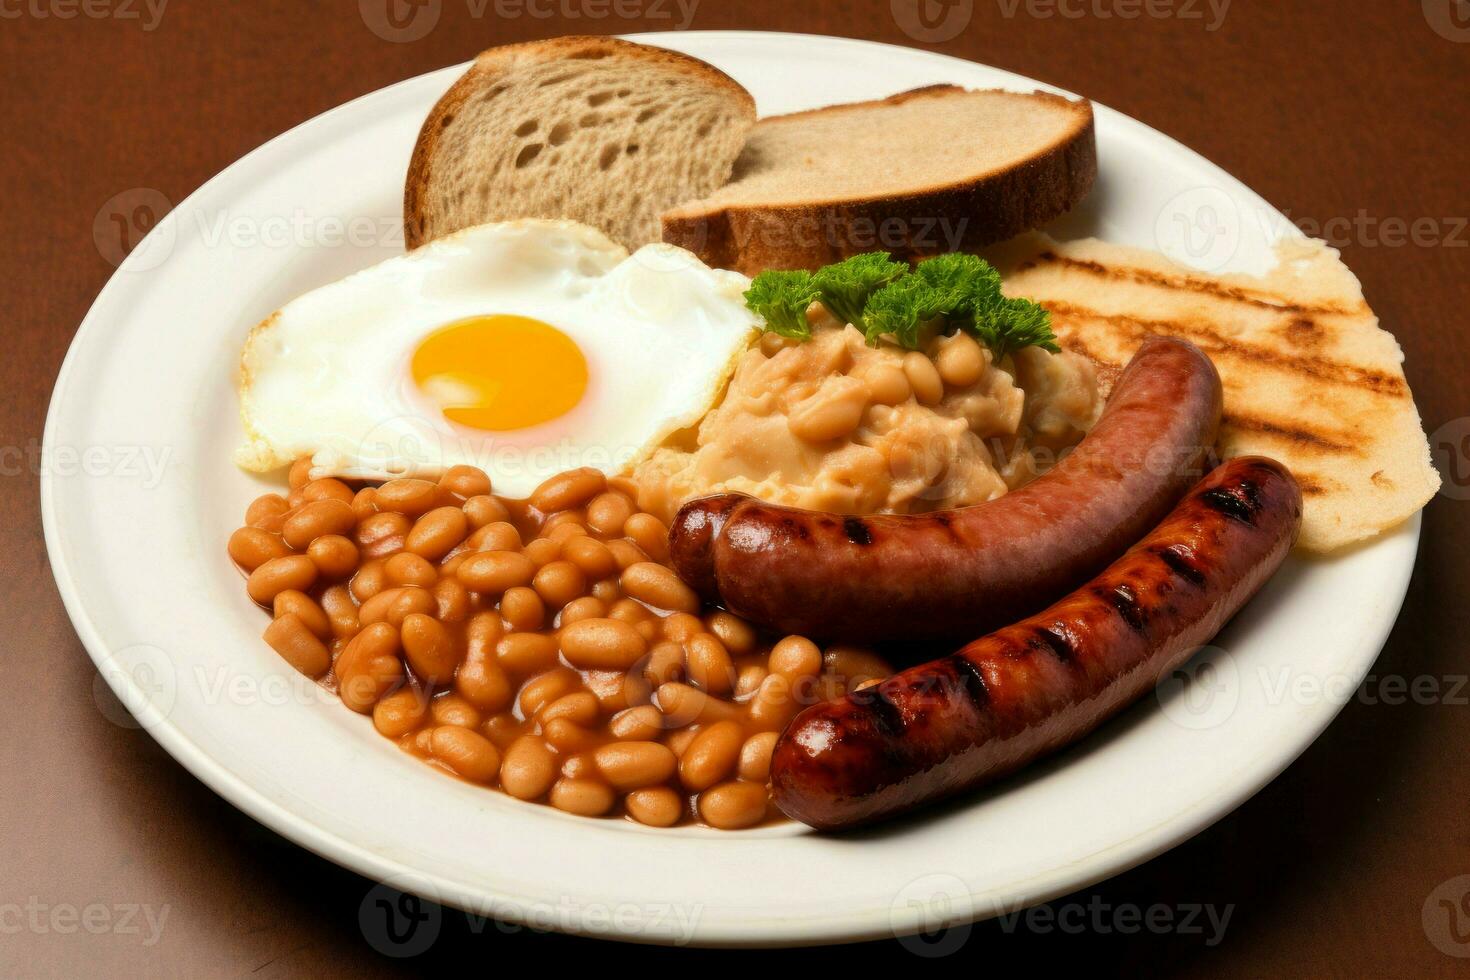 engelsk frukost på tallrik morgon. generera ai foto